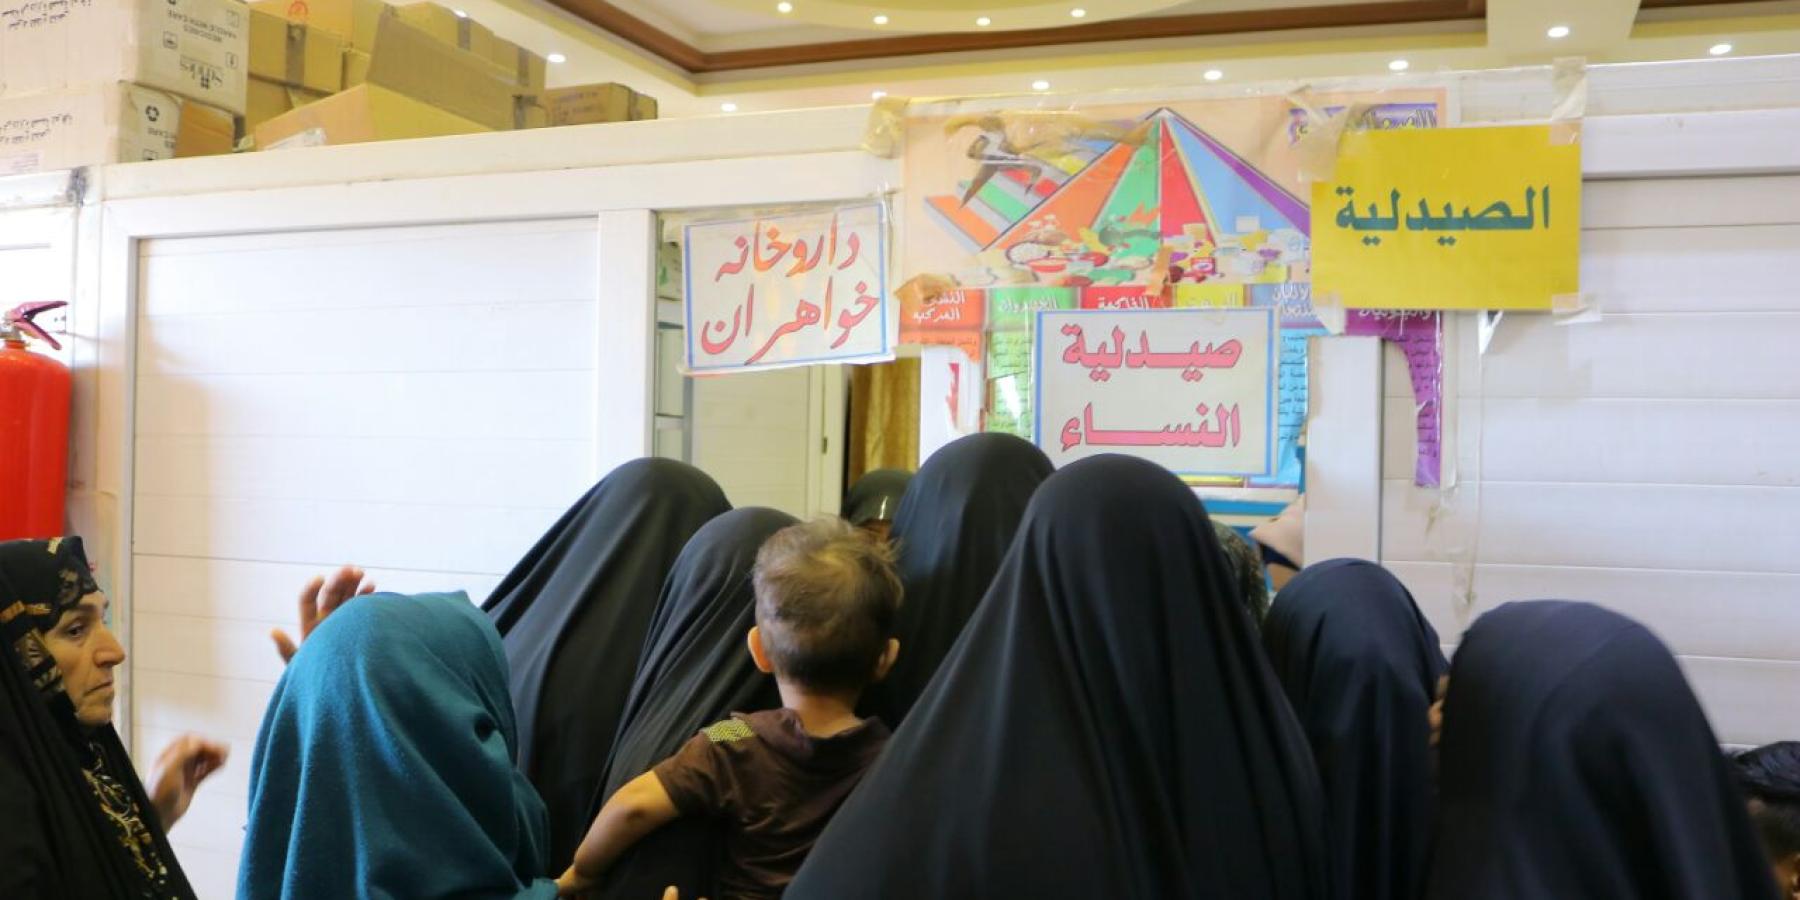 وحدة المفرزة الطبية النسوية تقدم أفضل خدماتها لزائرات خلال عيد الغدير الاغر